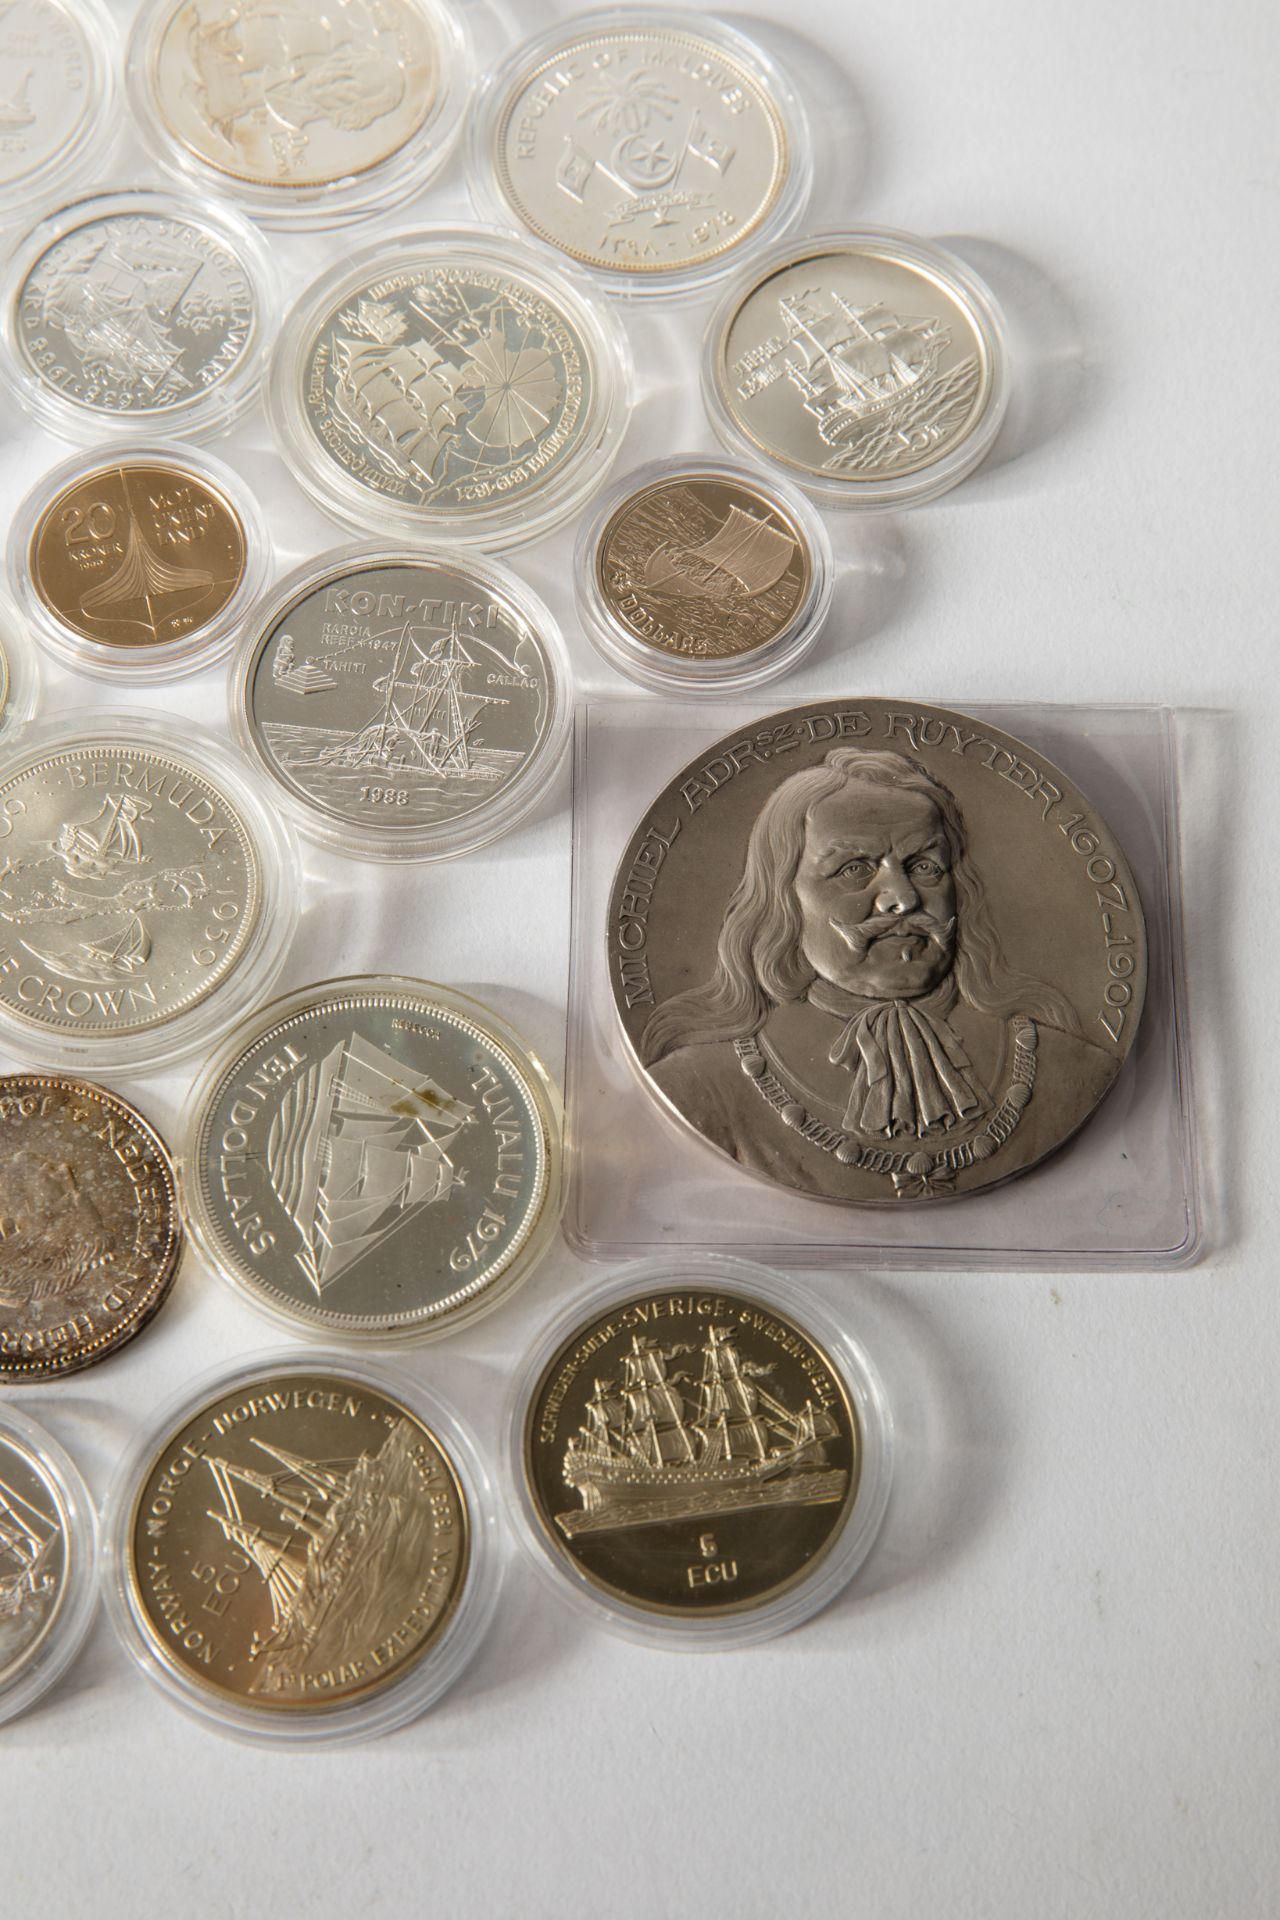 22 silver coins ships 1978-2017 worldwide - Bild 3 aus 10